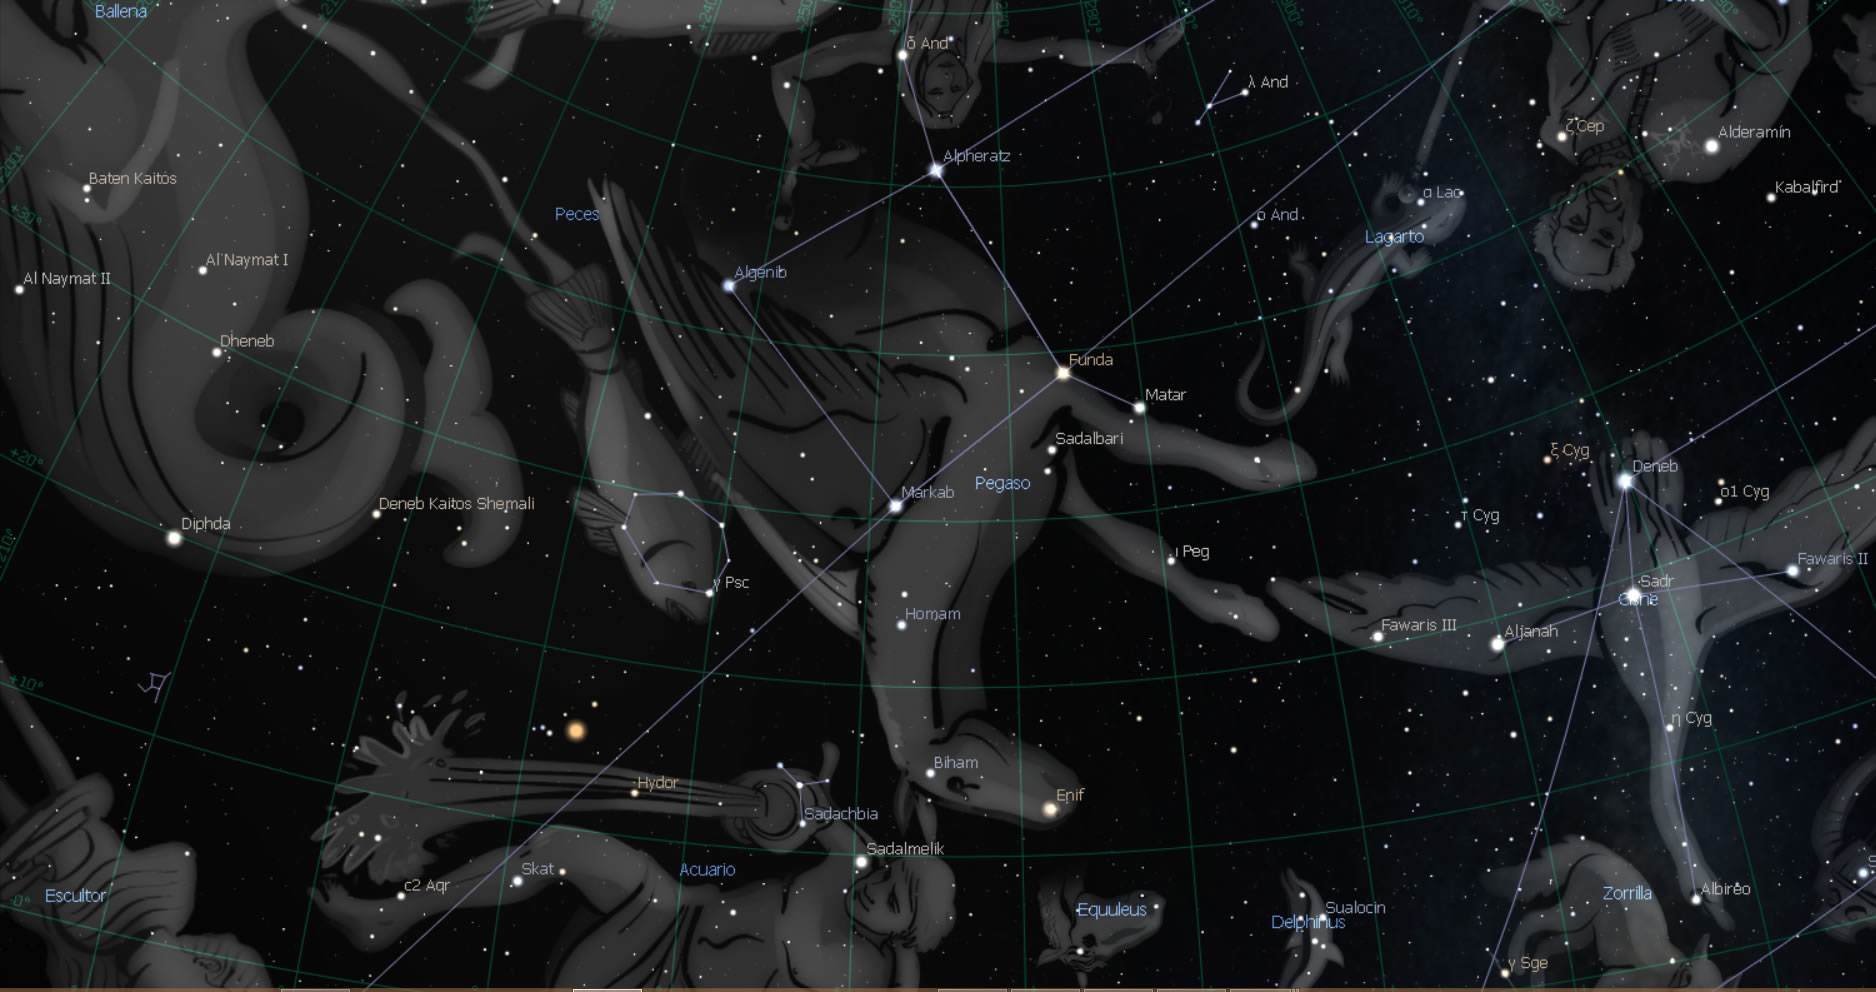 La constelación de Pegaso en la leyenda estelar occidental